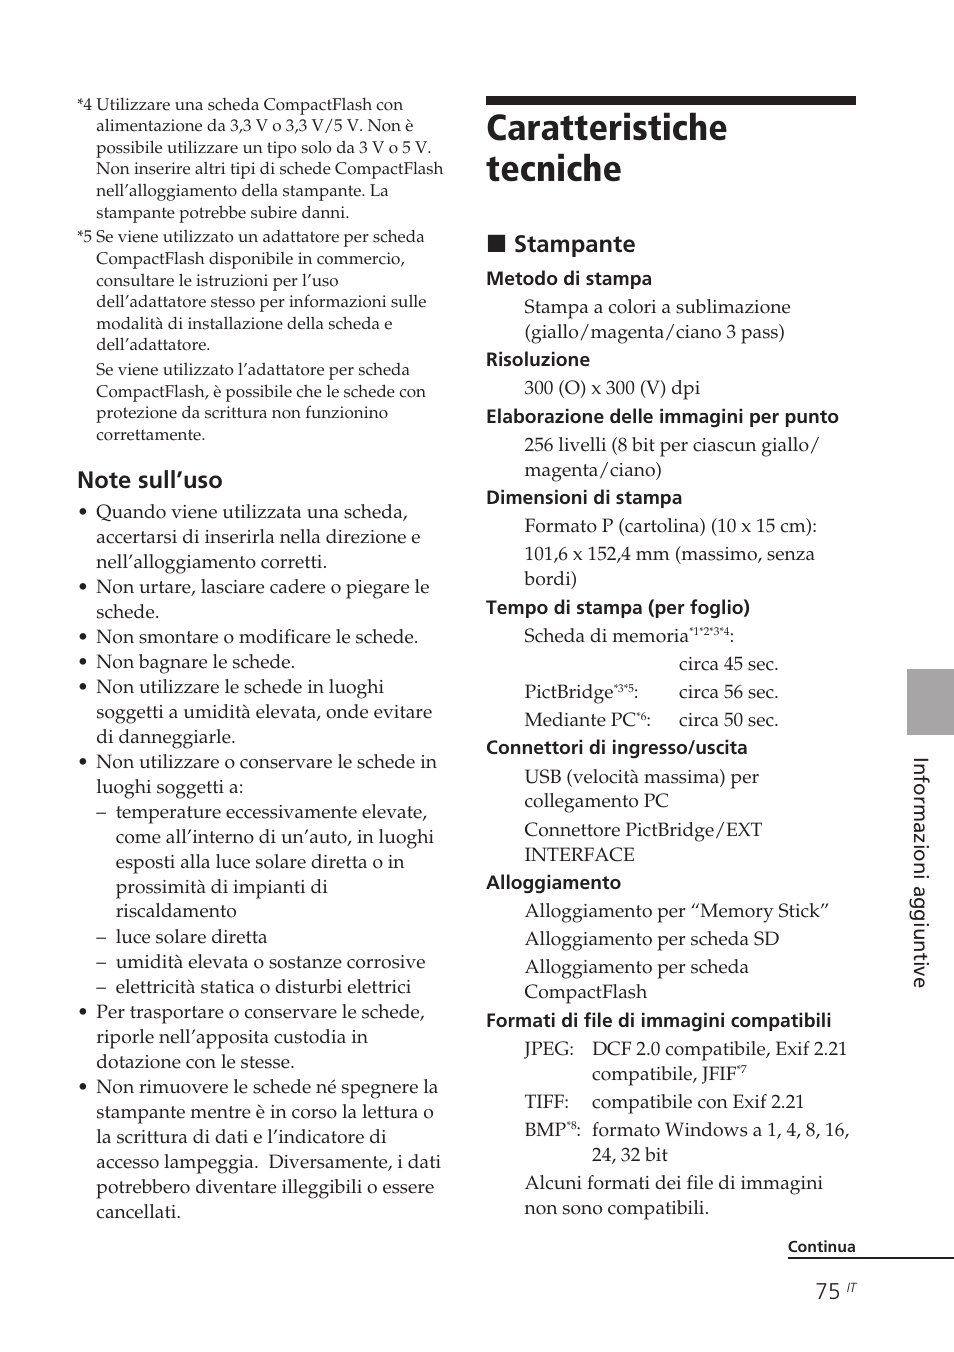 Caratteristiche tecniche, Xstampante | Sony DPP-FP90 Manuale d'uso | Pagina 75 / 84